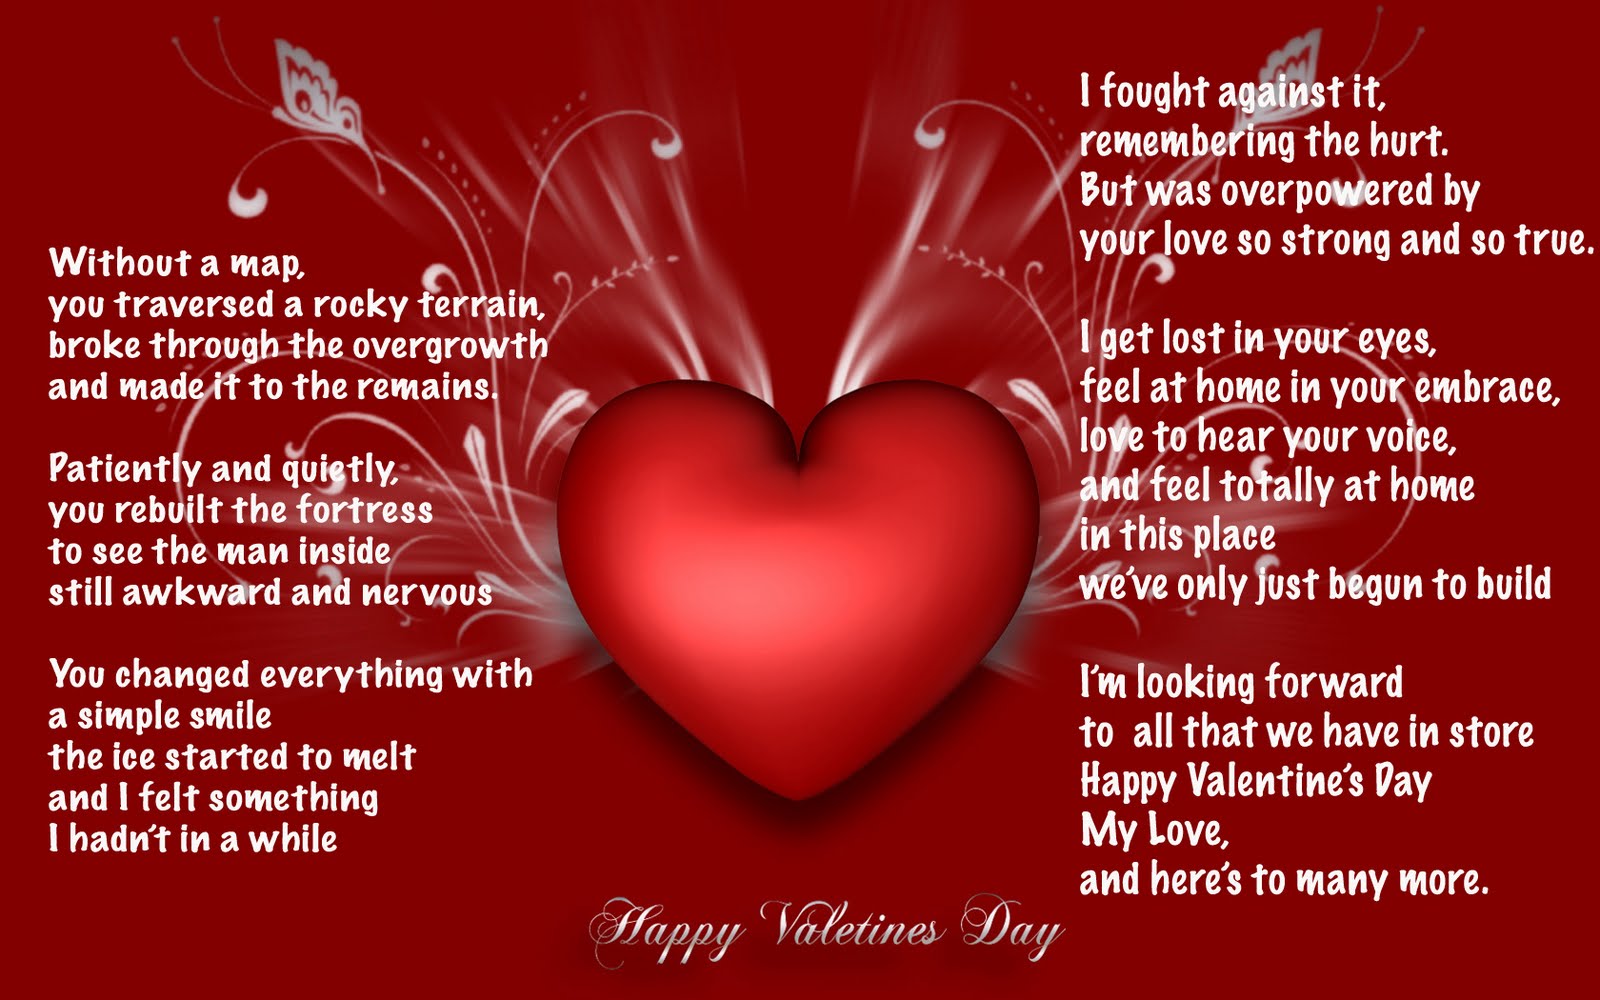 Happy Valentines Day picture- Valentine's day photo 2014 | Valentine's ...